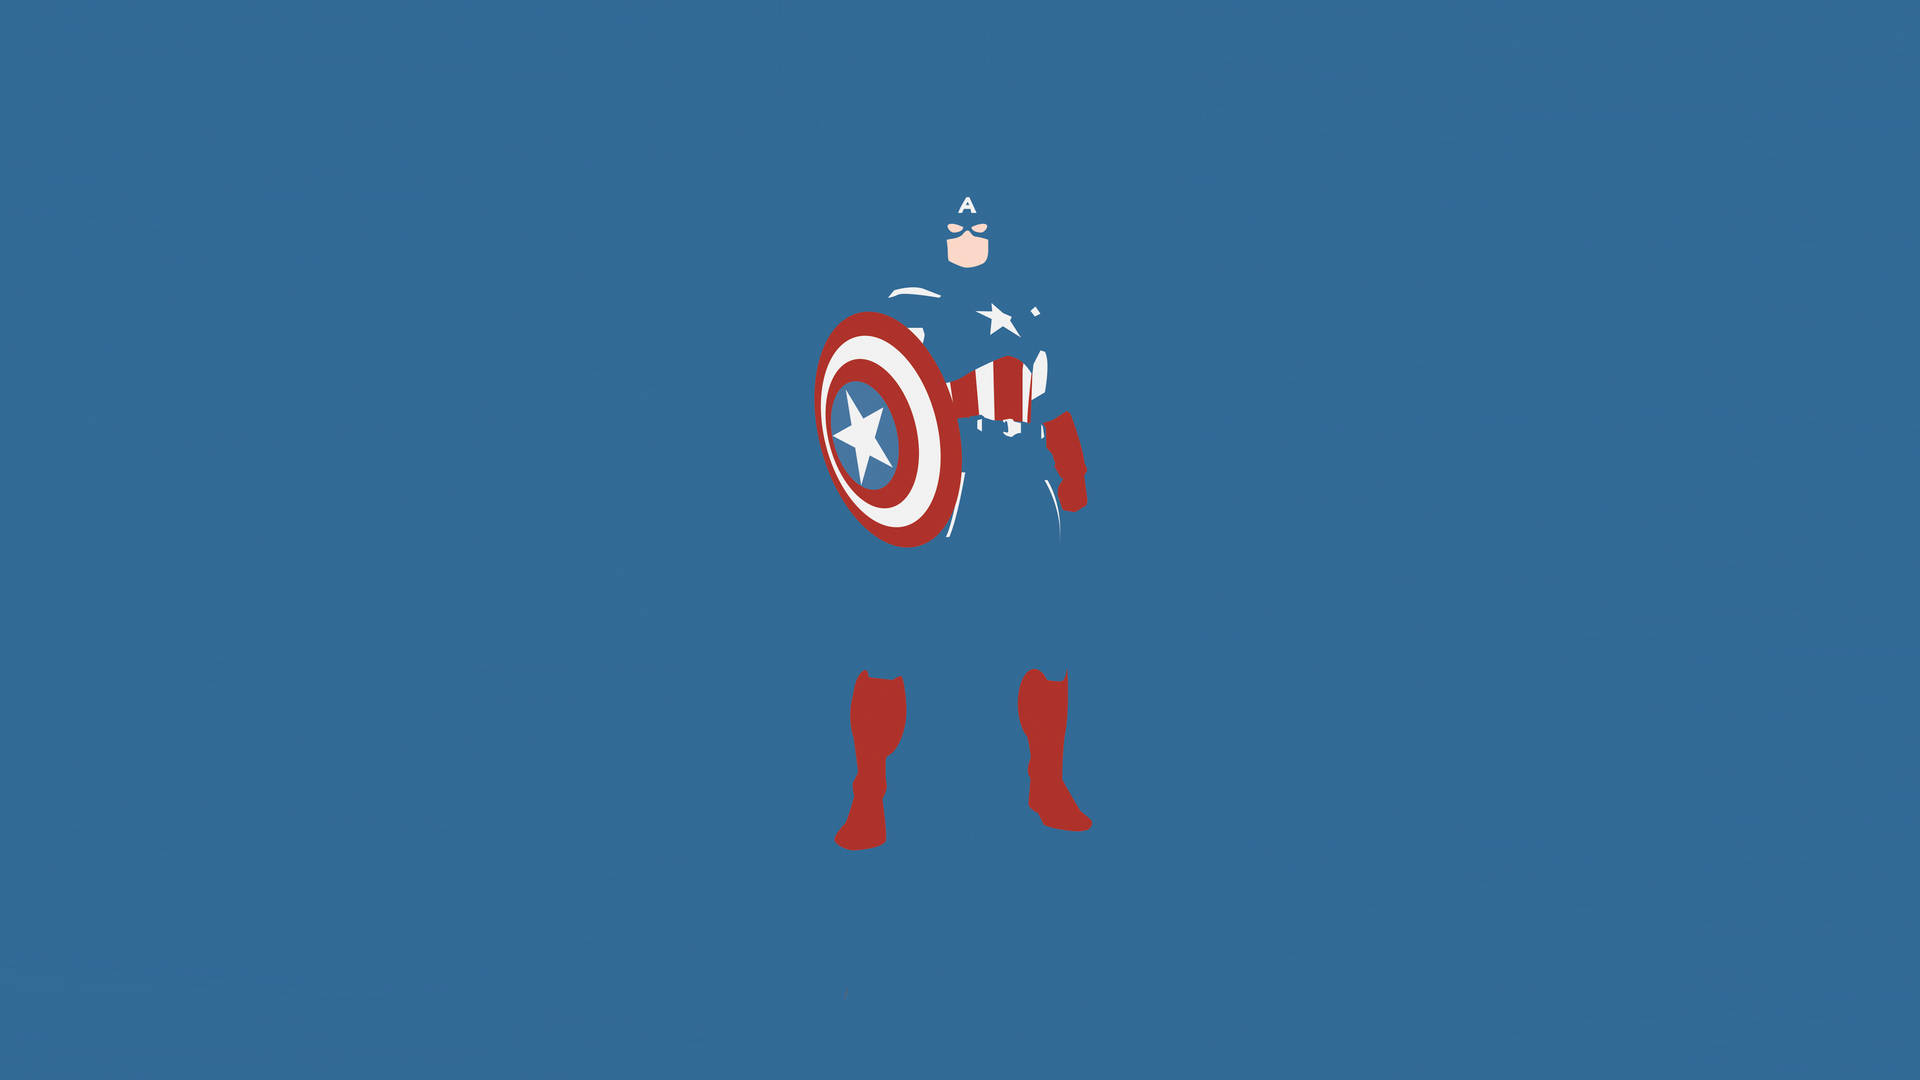 Marvelminimalista Con El Capitán América Fondo de pantalla